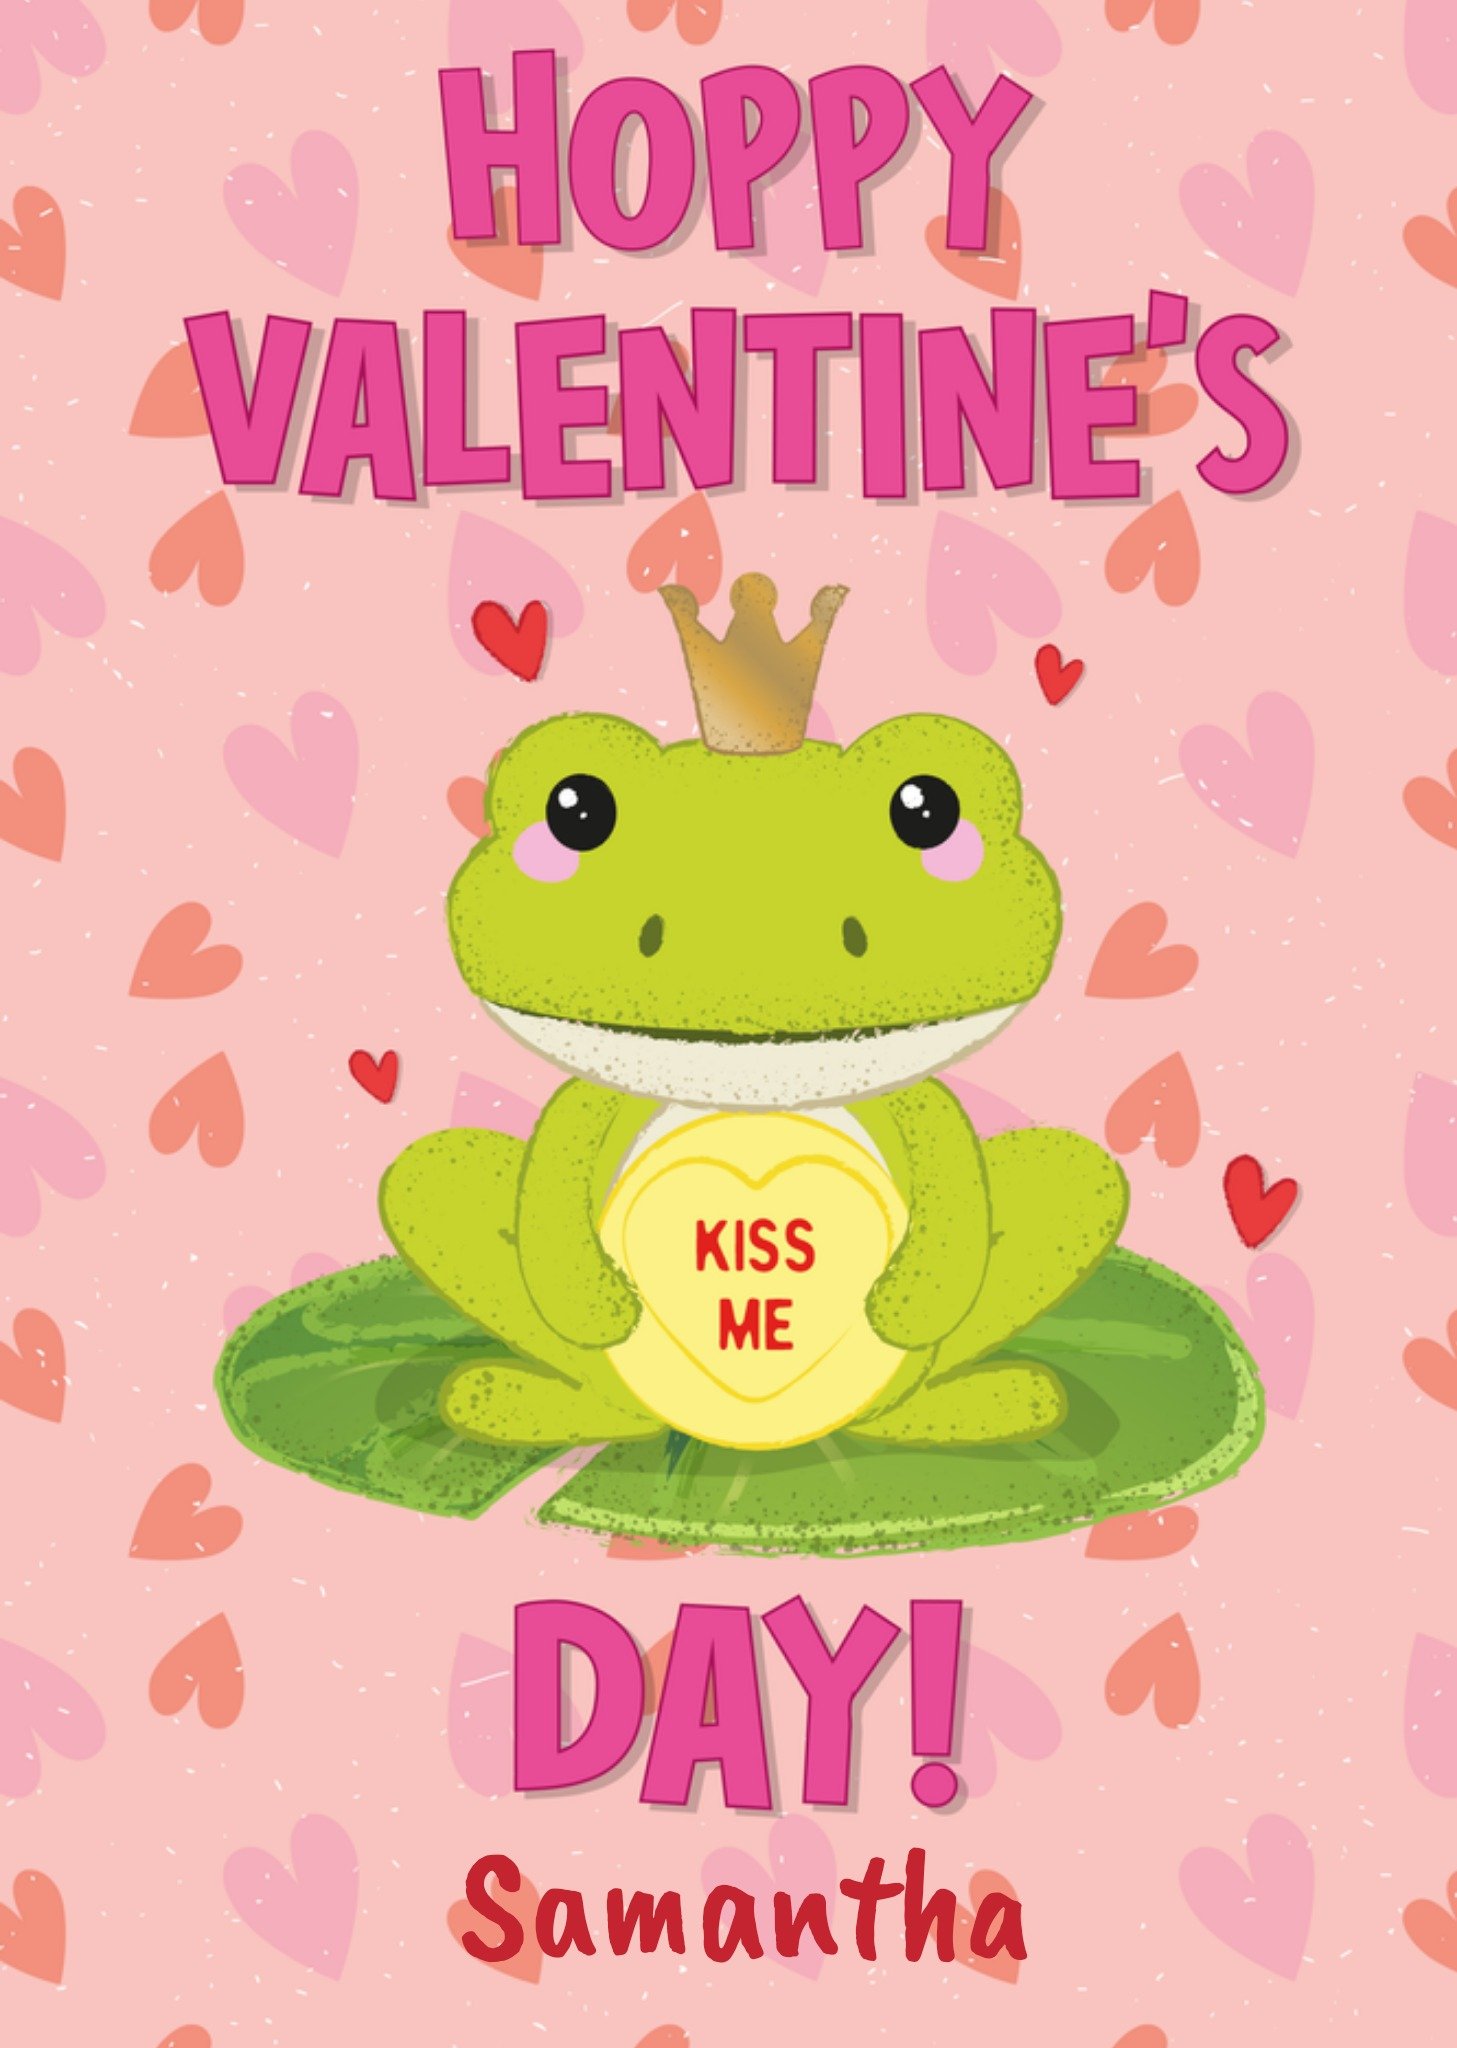 Swizzels Love Hearts Swizzels Hoppy Valentine's Day Card, Large